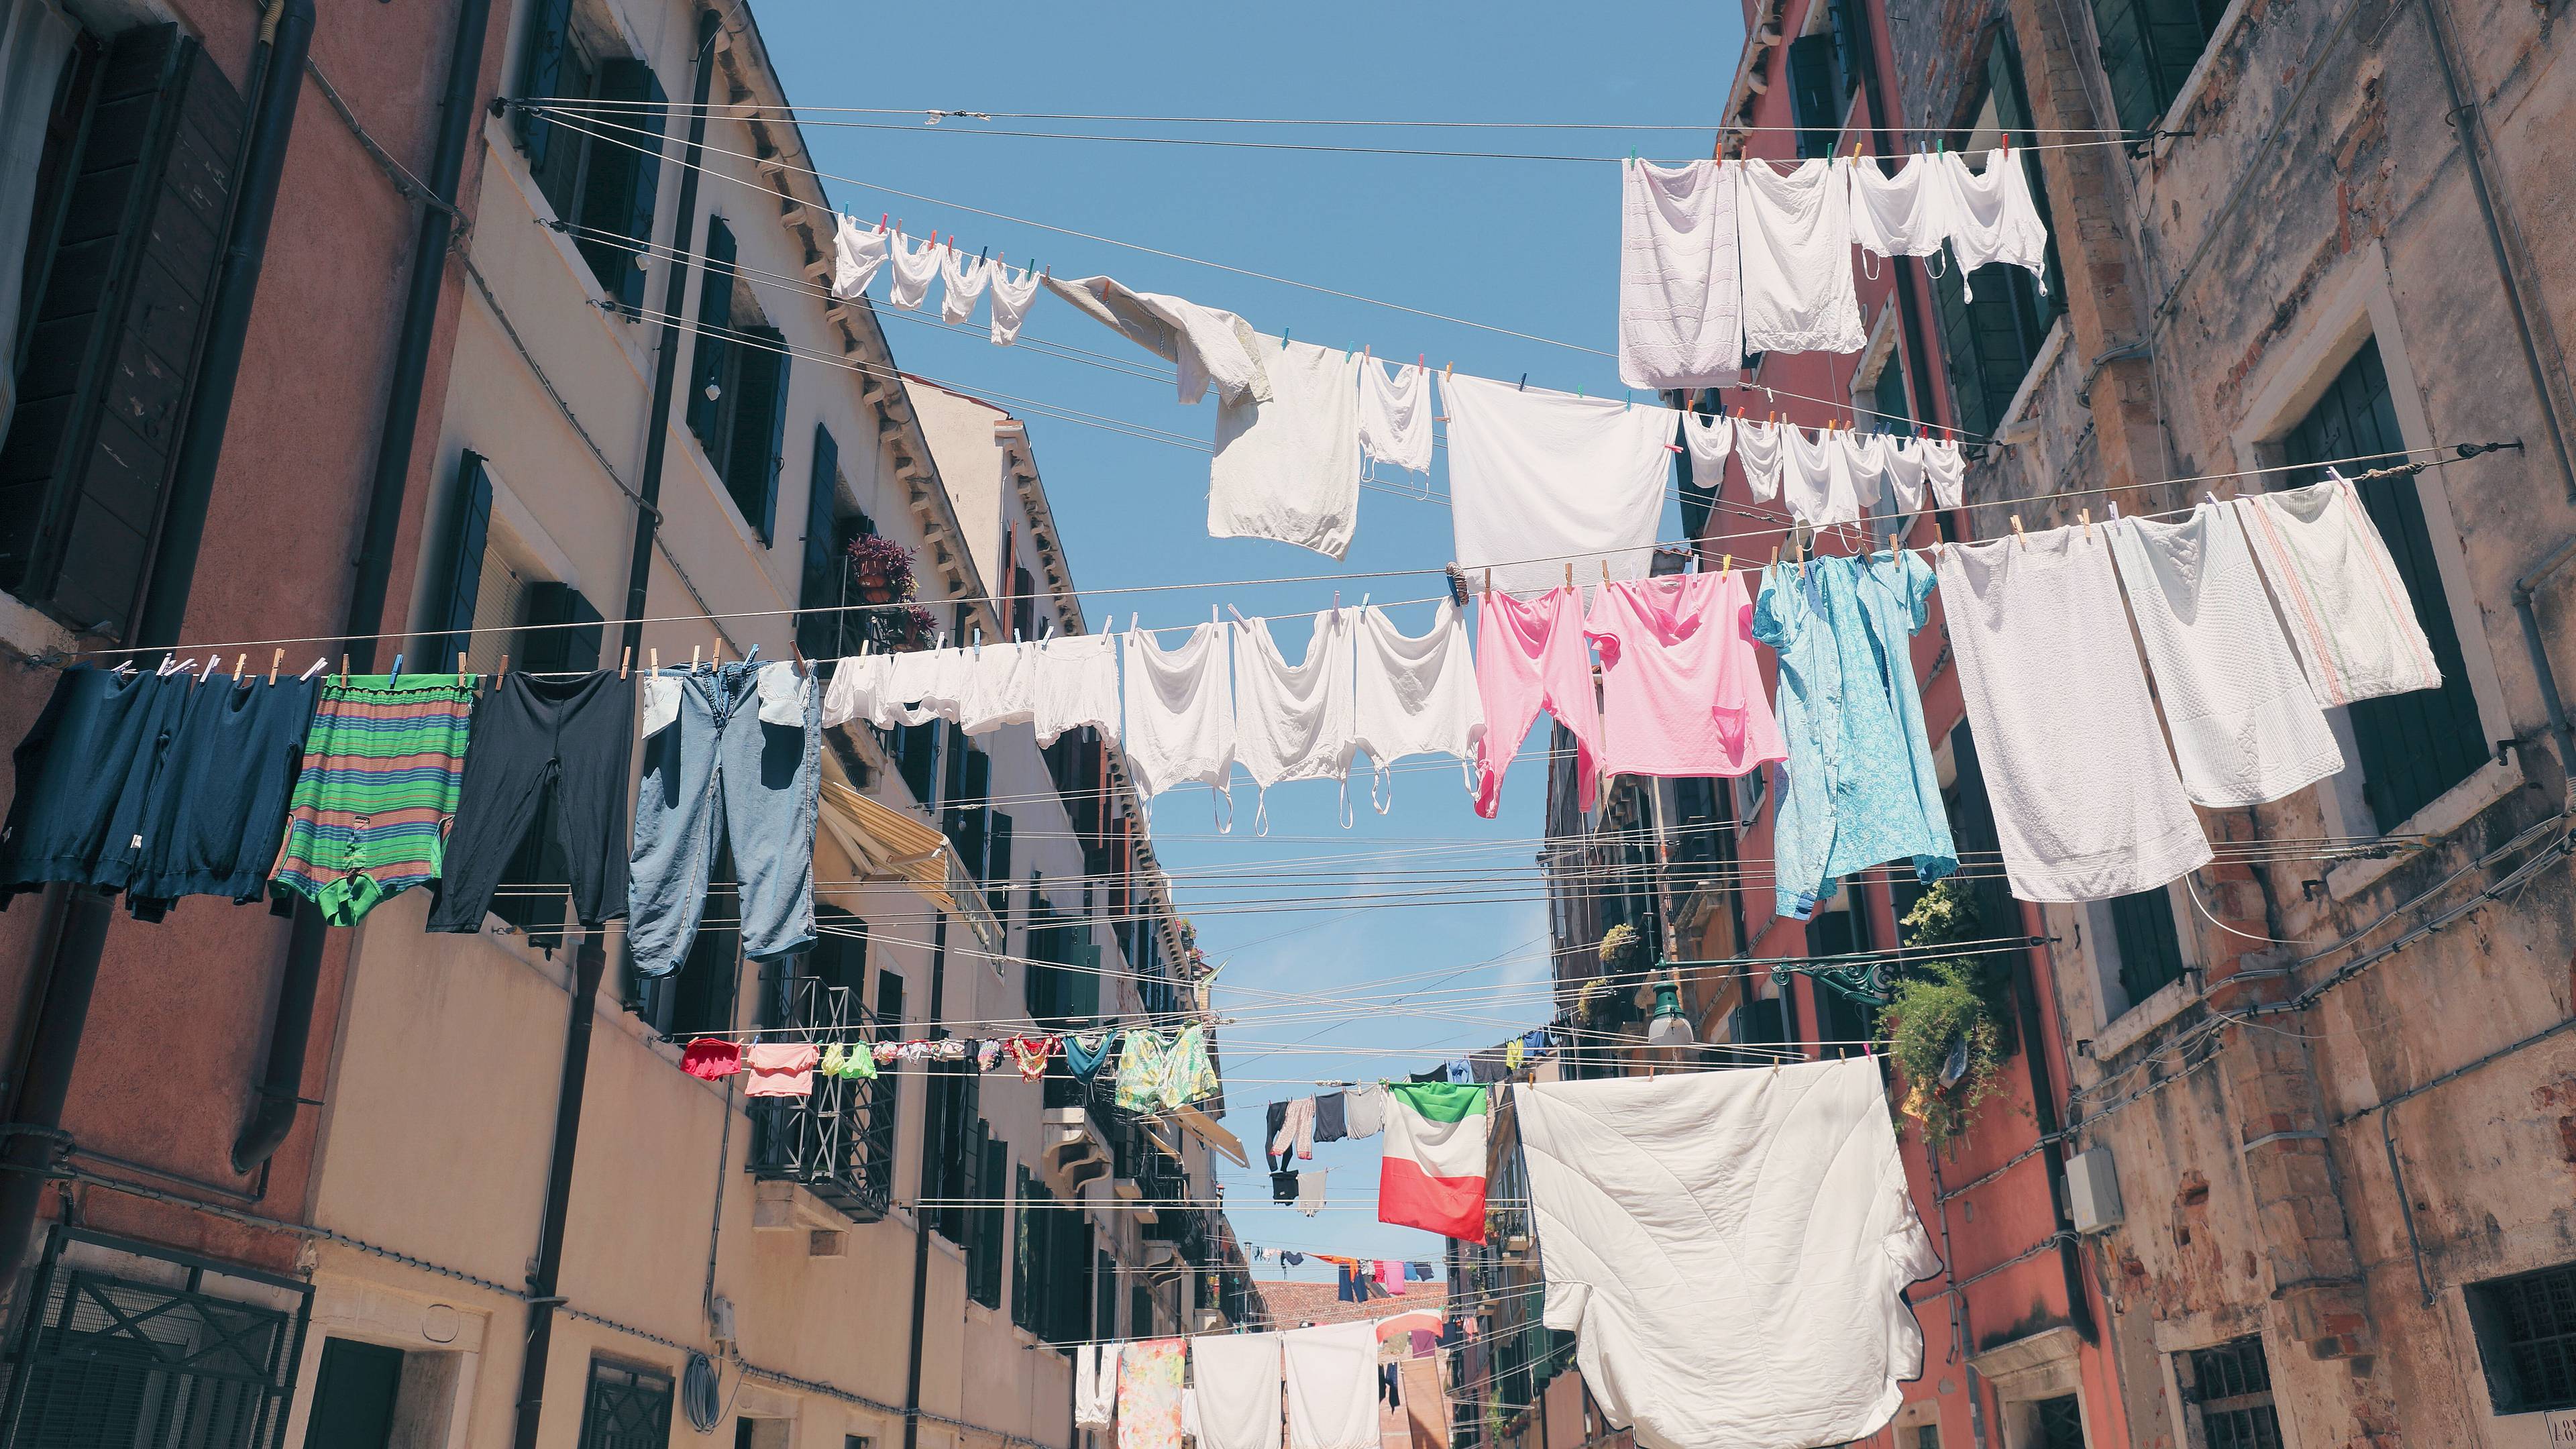 Secado de ropa en cables a través de una calle napolitana